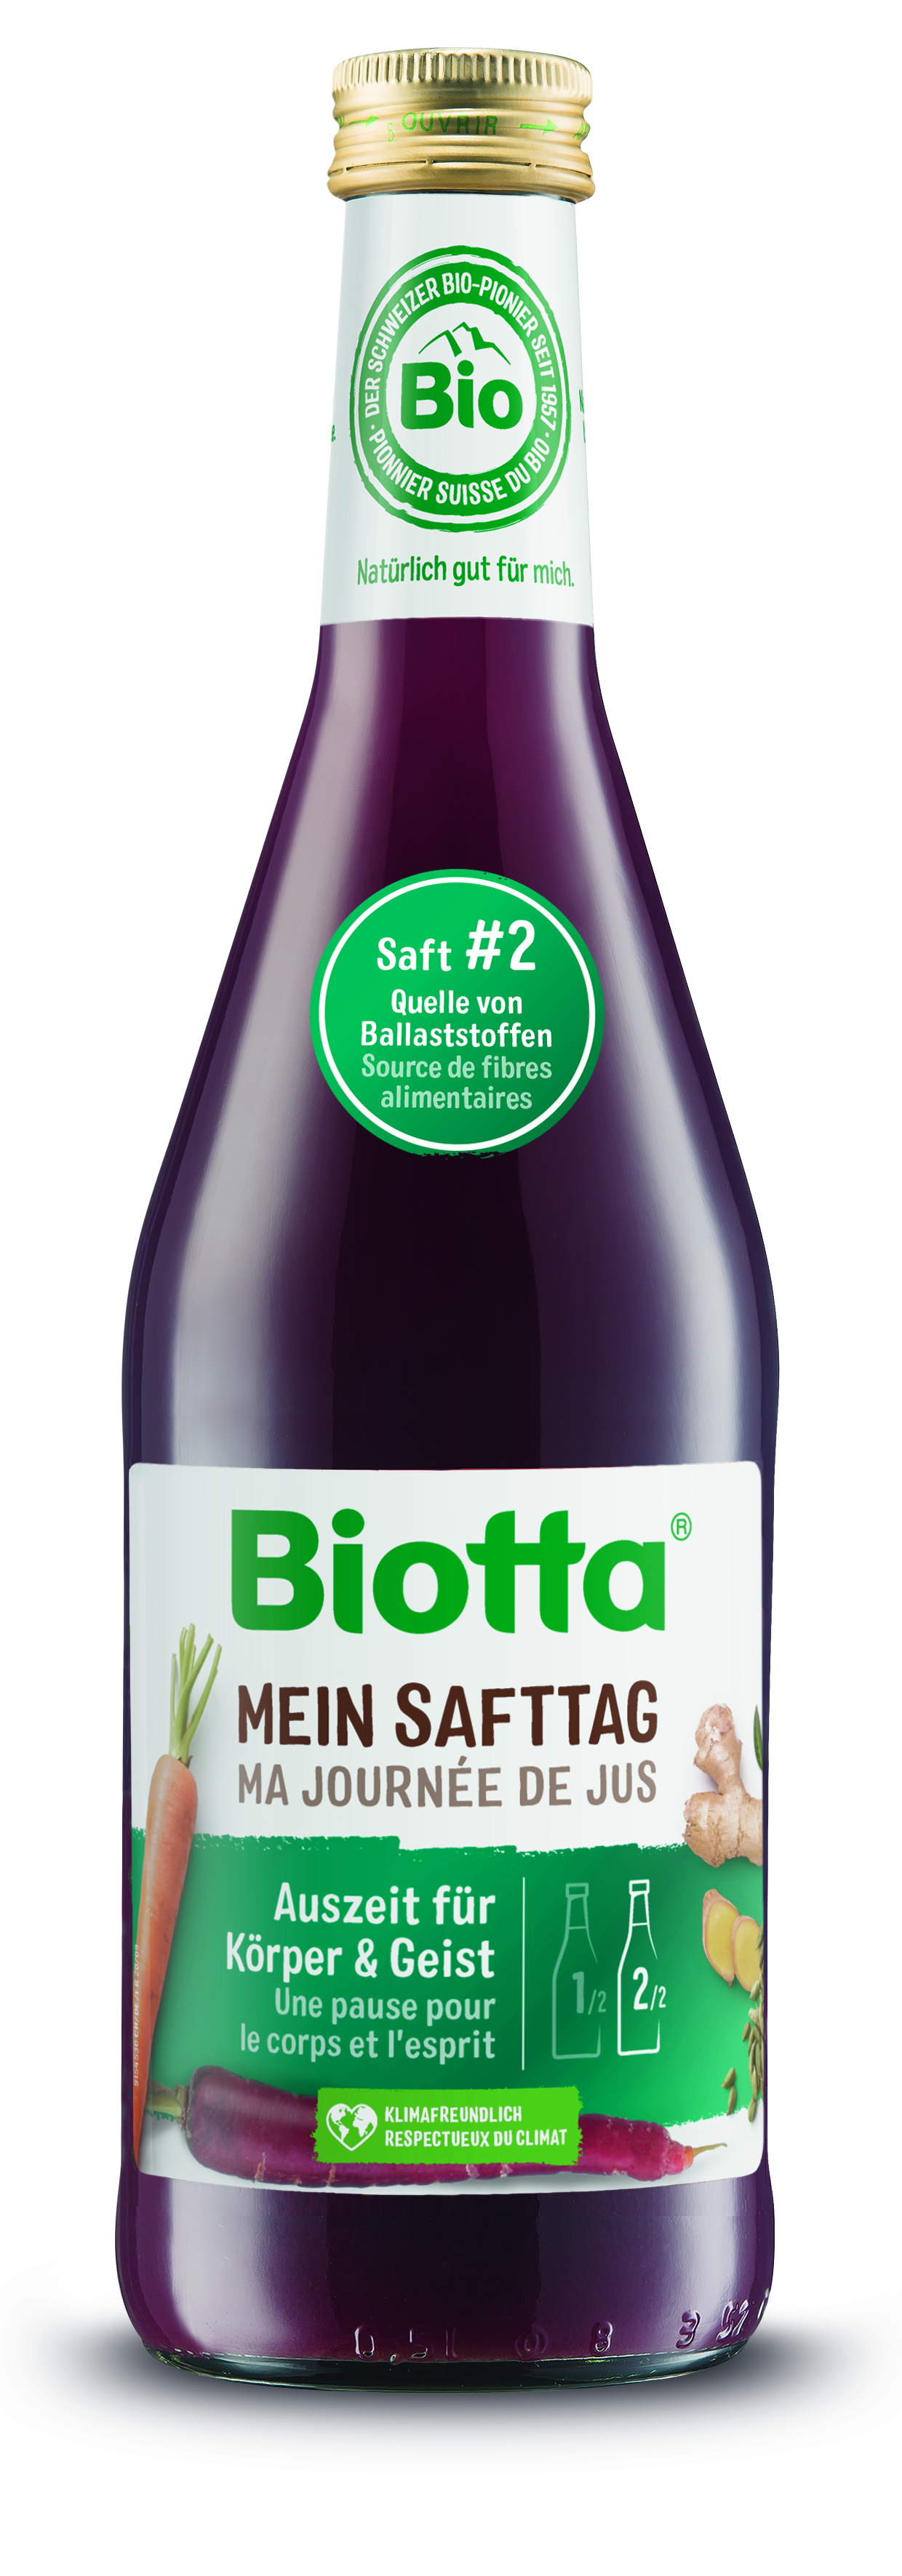 Biotta MEIN SAFTTAG #2 Bio